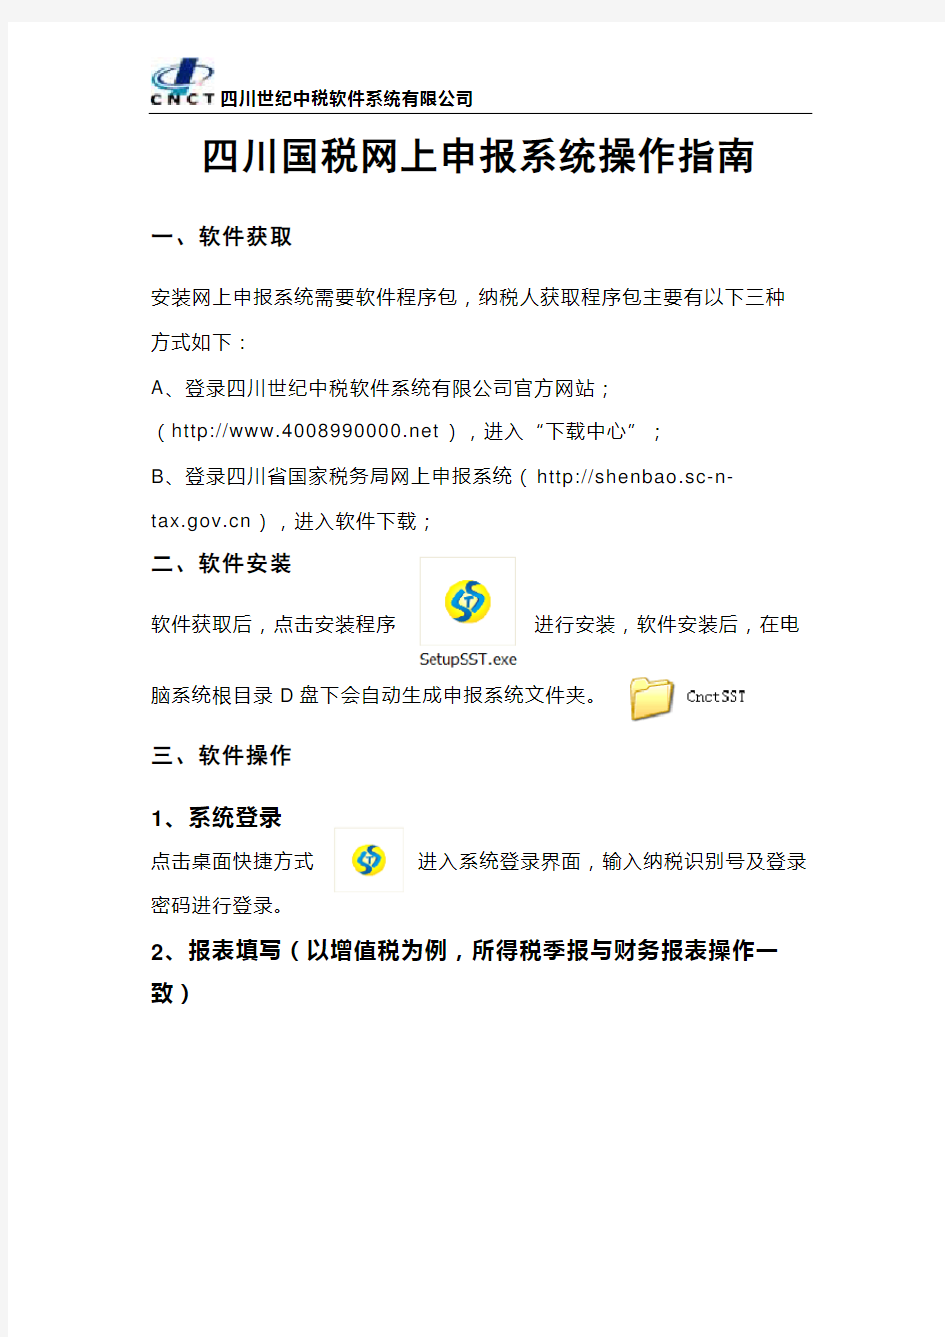 四川国税网上申报系统操作指南